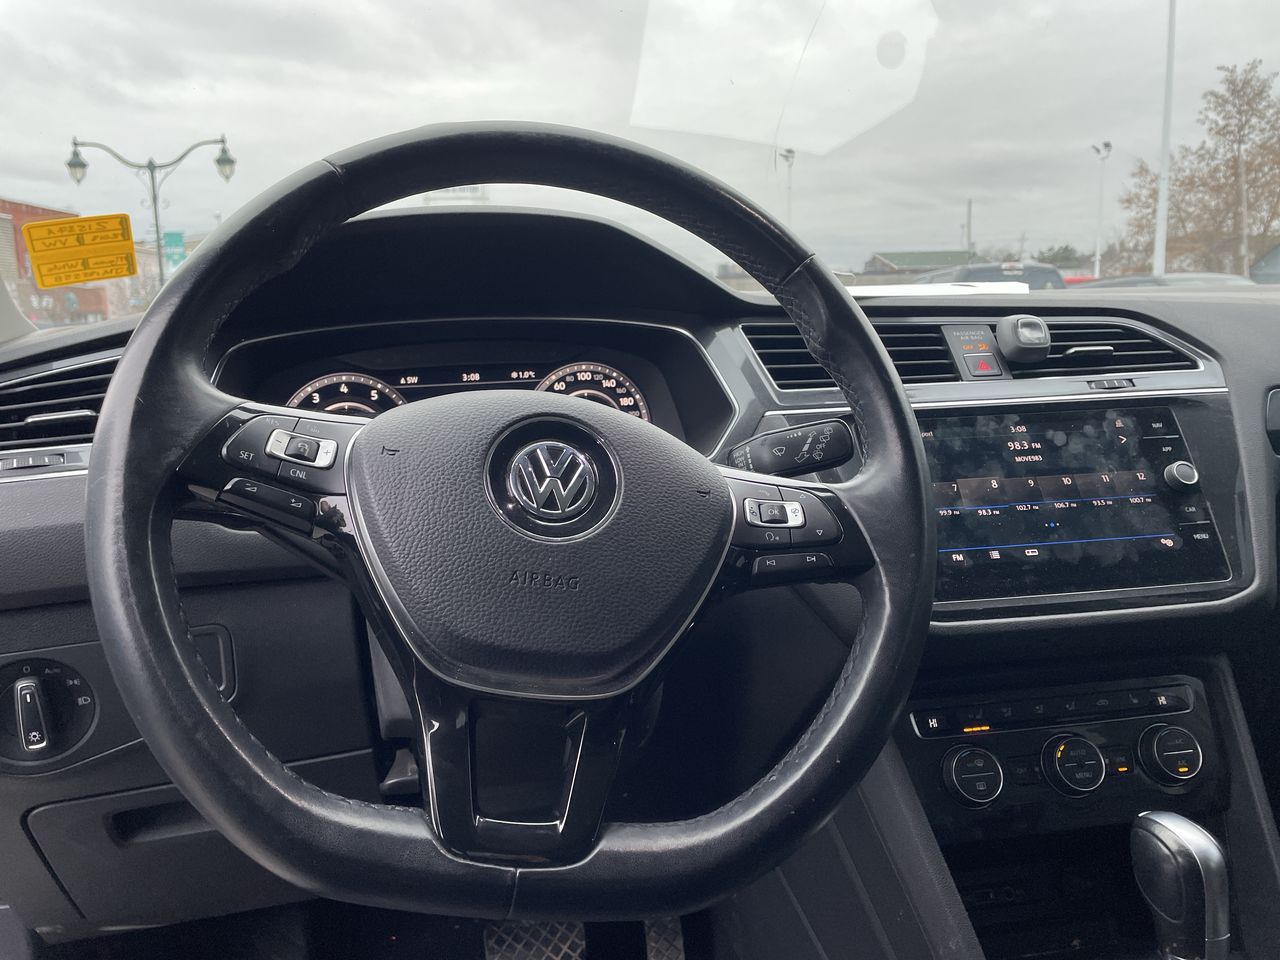 2018 Volkswagen Tiguan - 21537A Full Image 4